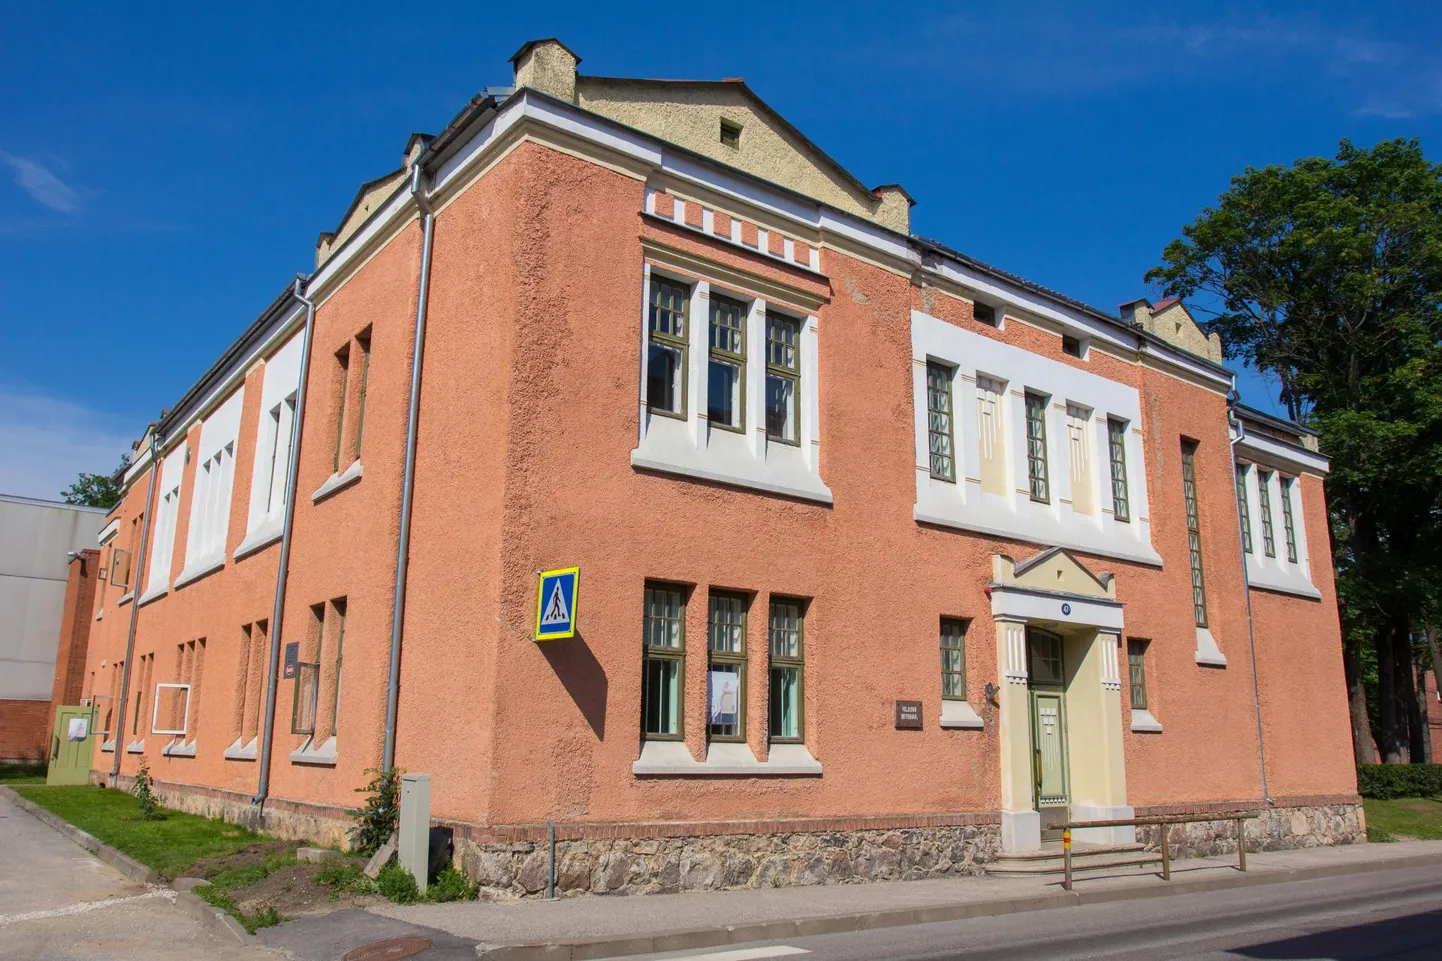 Eesti looduskaitse selts andis Viljandi huvikoolile rohelise lipu, millega tunnustas selle õppeasutuse keskkonnateadlikku tegevust.